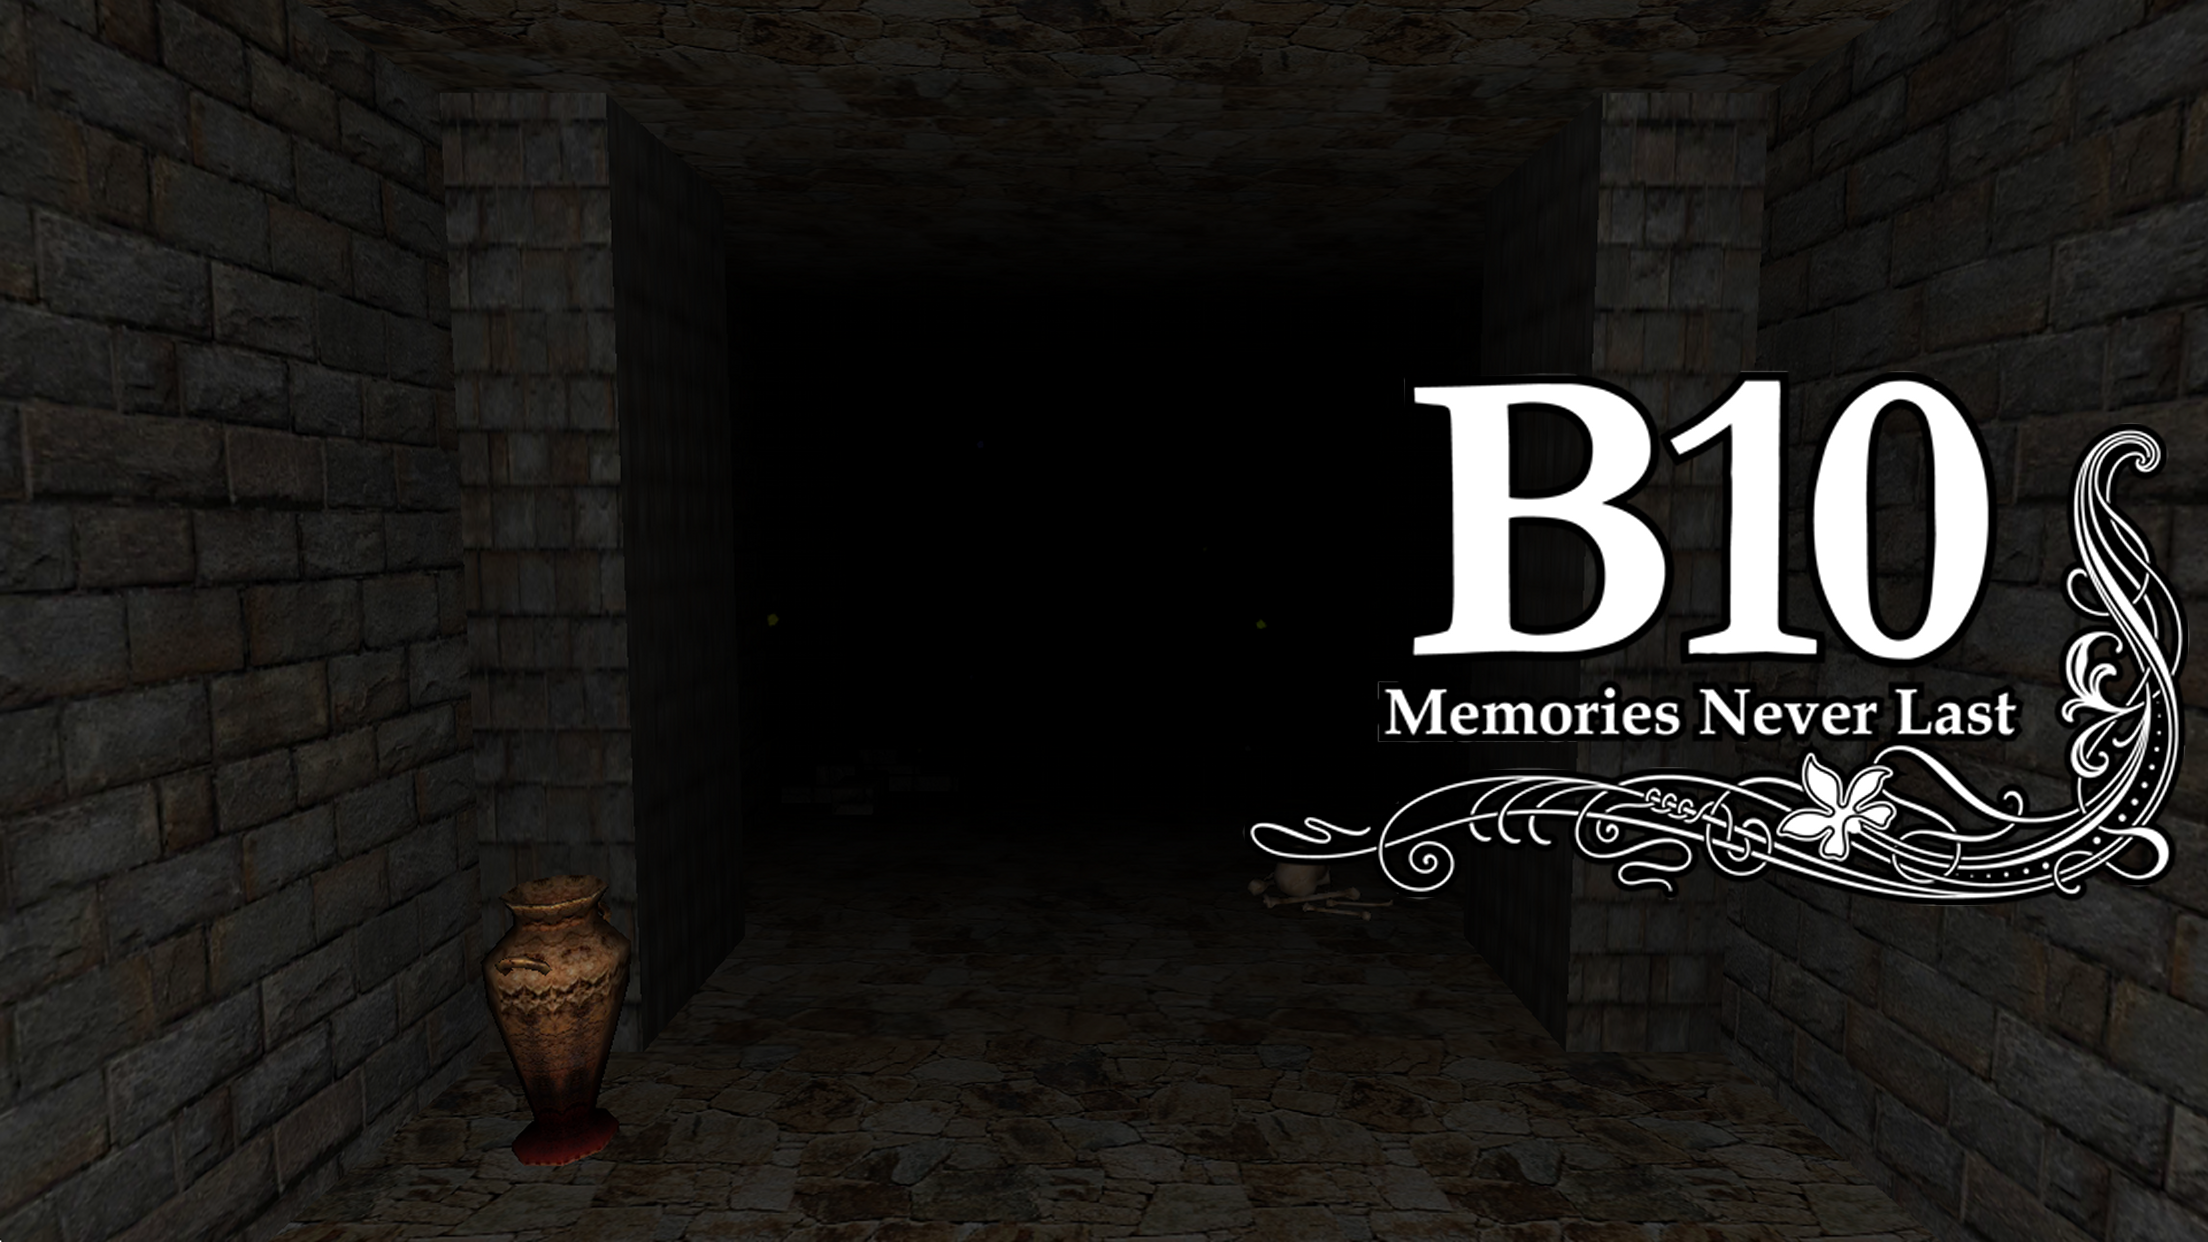 Screenshot 1 of B10 ความทรงจำไม่มีวันคงอยู่ 1.0.1